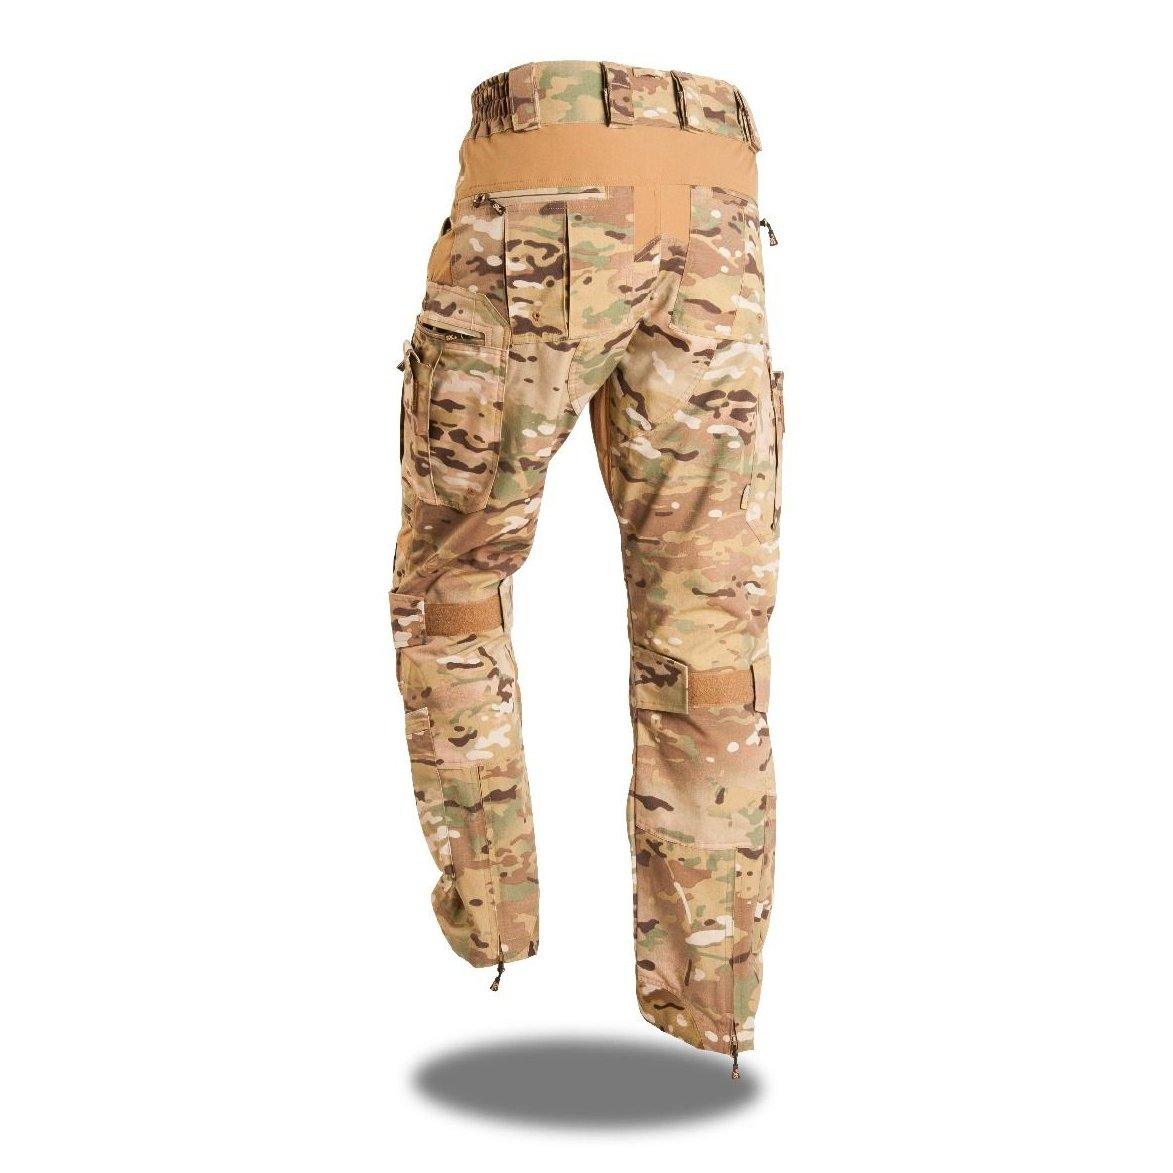 SK 7 EON R Tactical Pant - MULTICAM - Sizes 40"-48" - Vendor